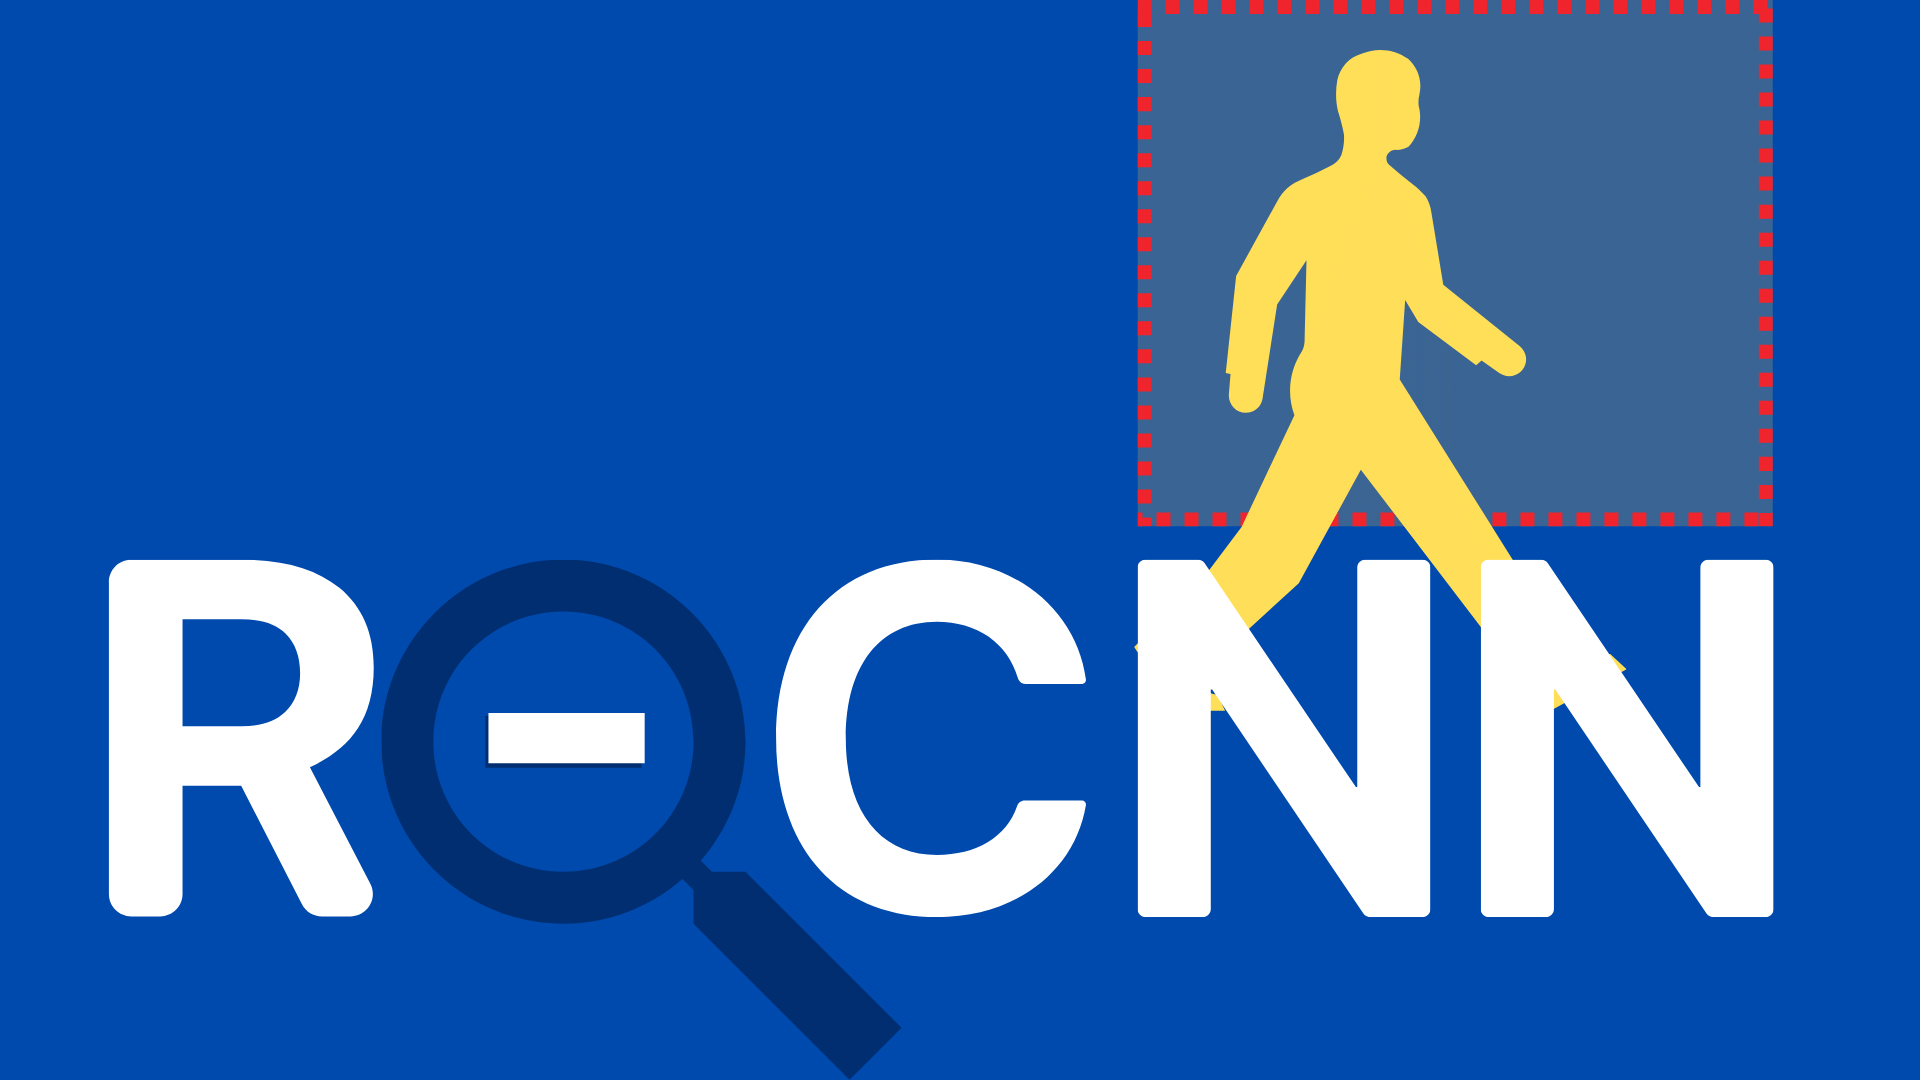 R-CNN